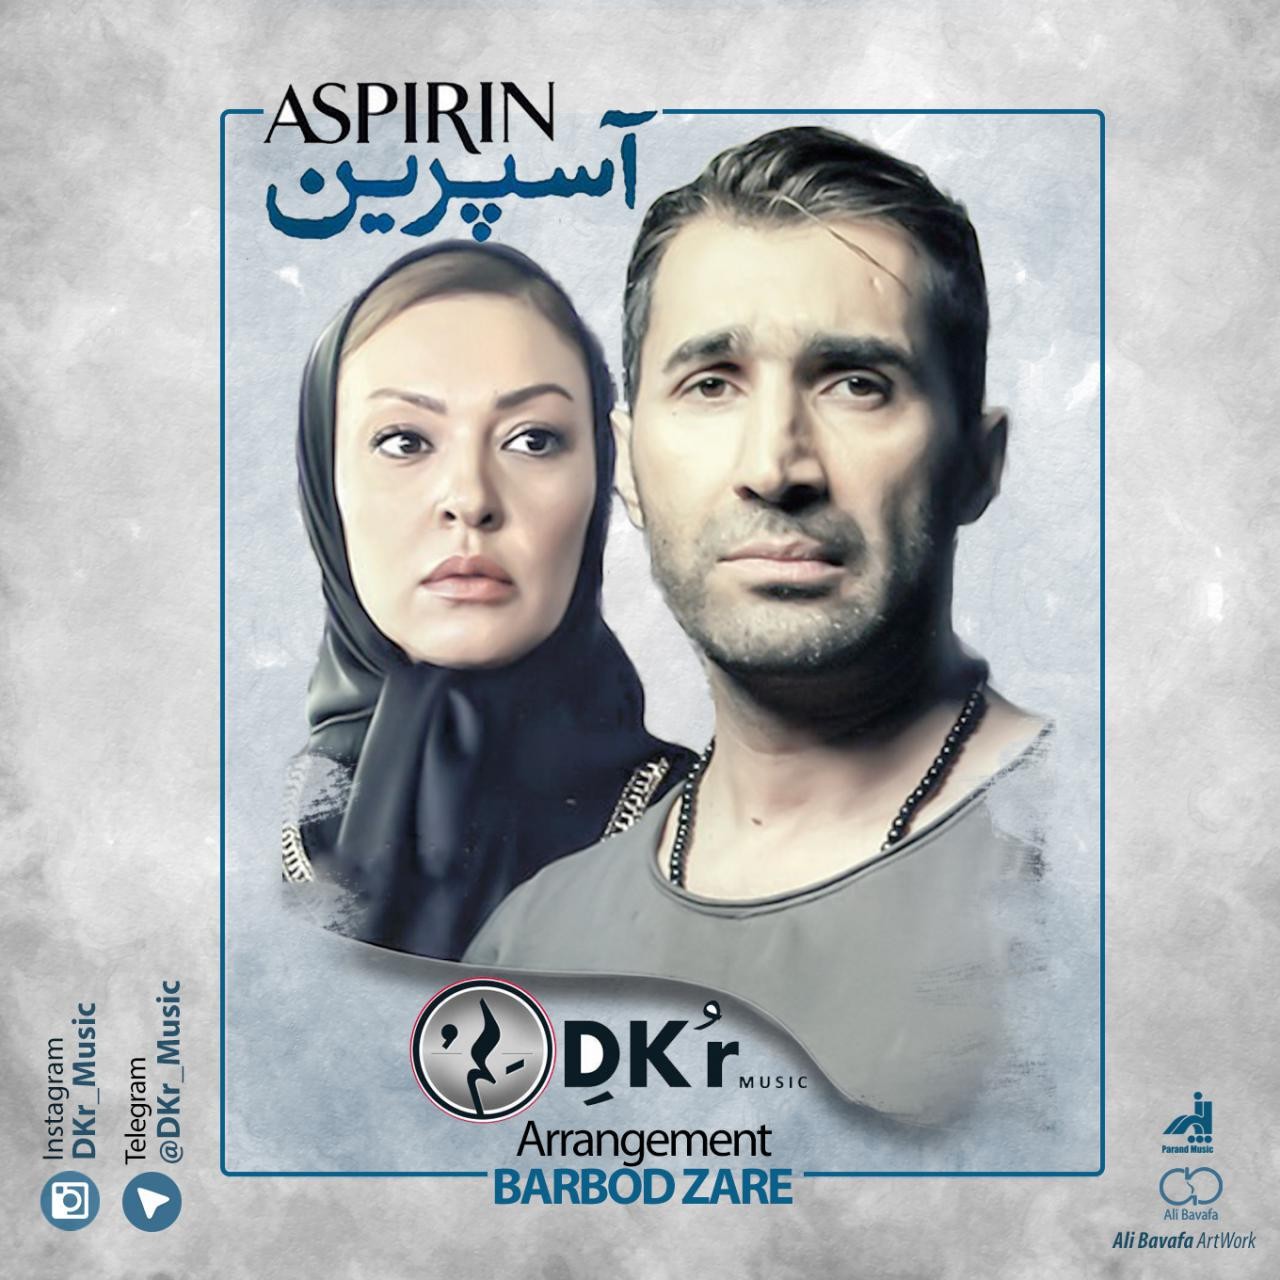  دانلود آهنگ جدید دِکُر - آسپیرین | Download New Music By Dkr - Aspirin